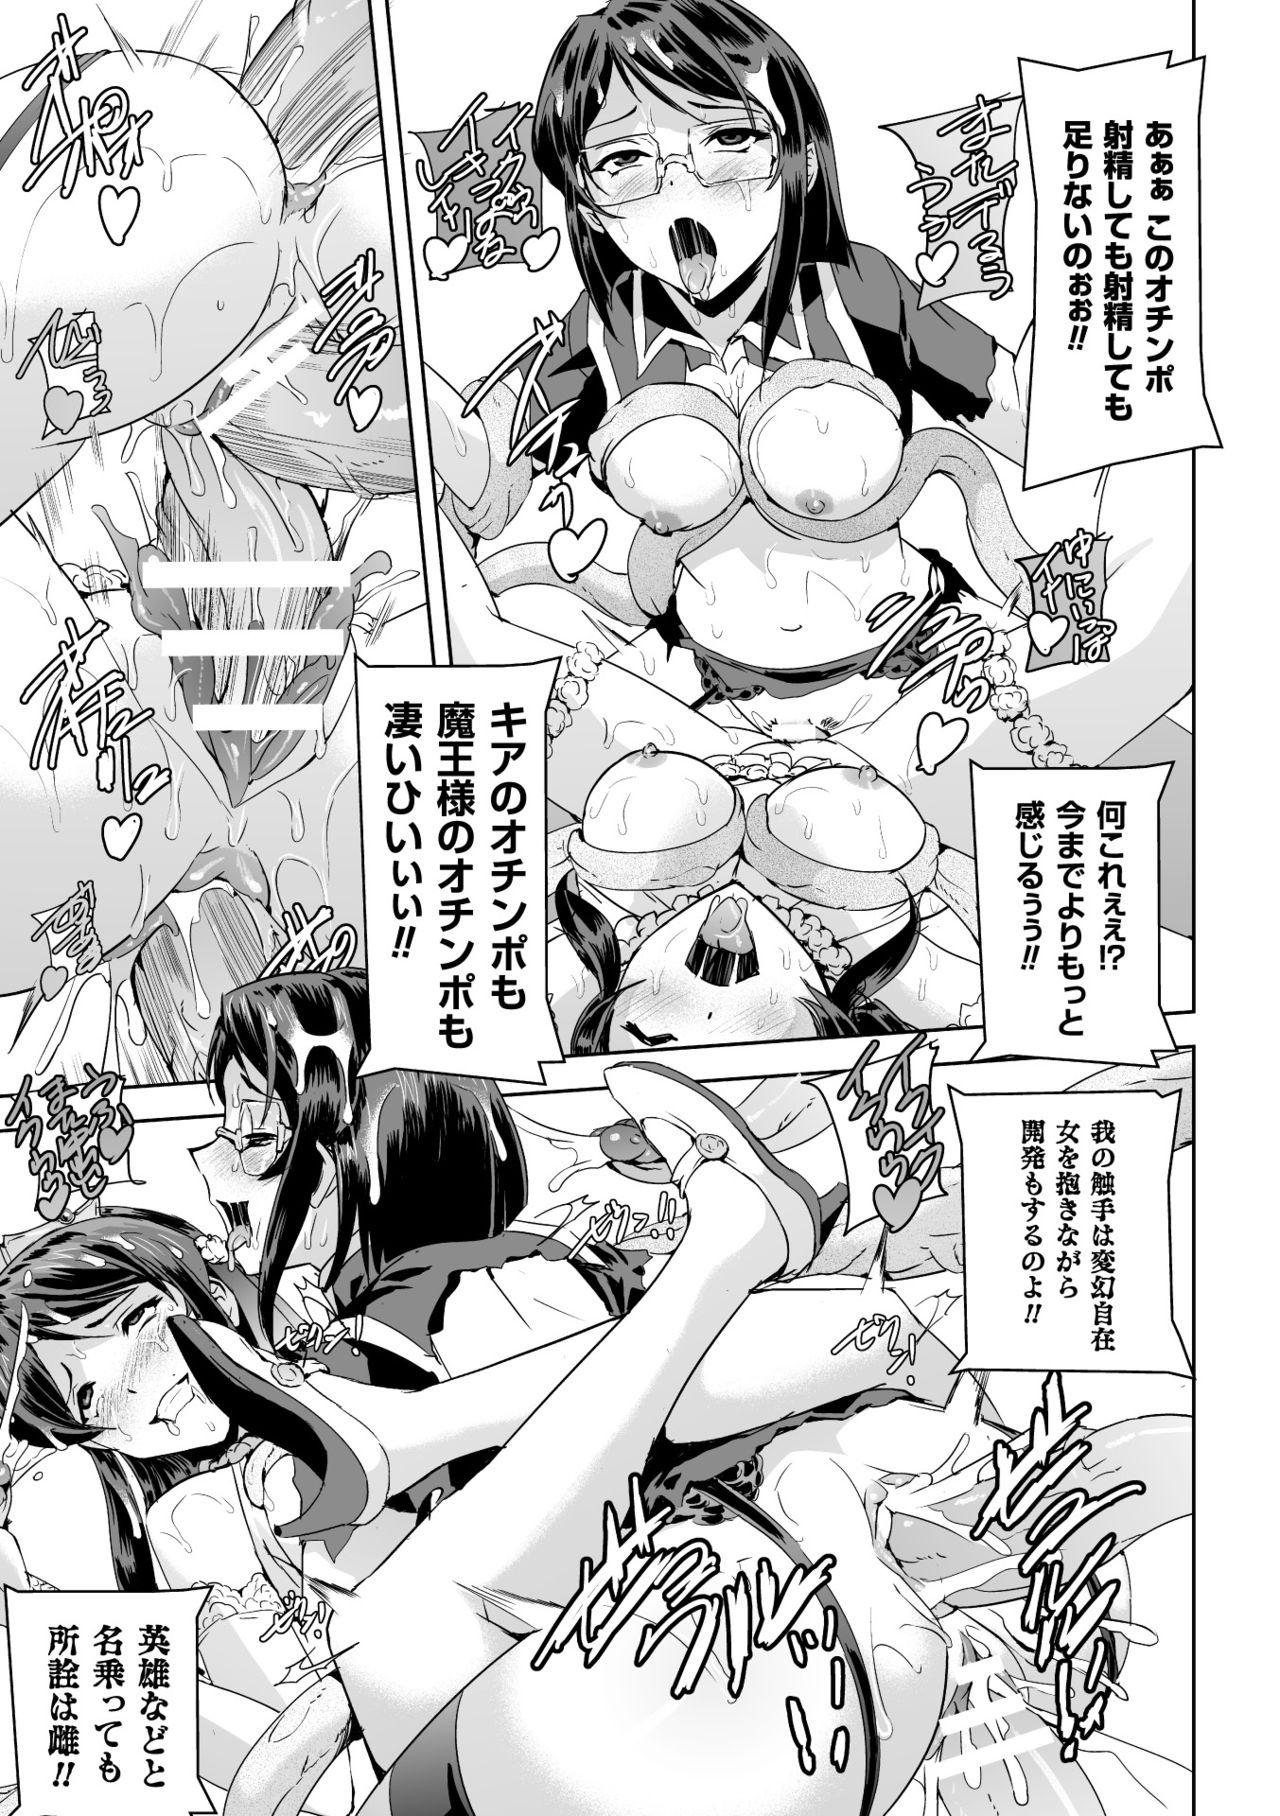 Seigi no Heroine Kangoku File Vol. 2 40